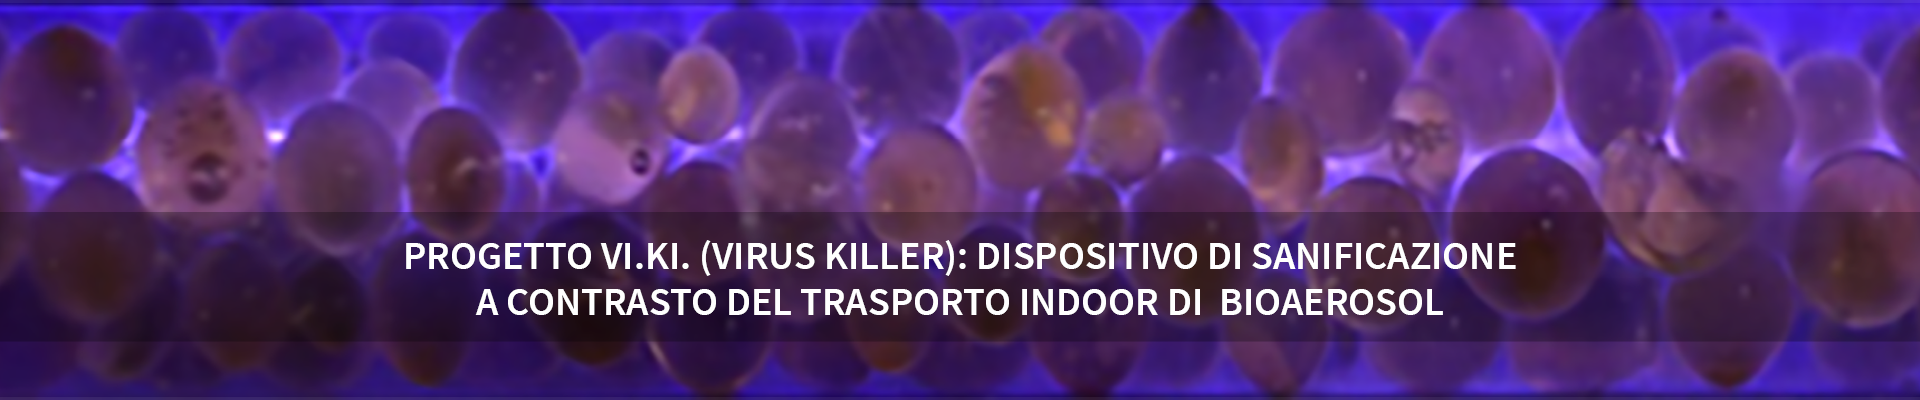 VIKI (VIrus KIller): dispositivo di sanificazione a contrasto del trasporto indoor di bioaerosol - 